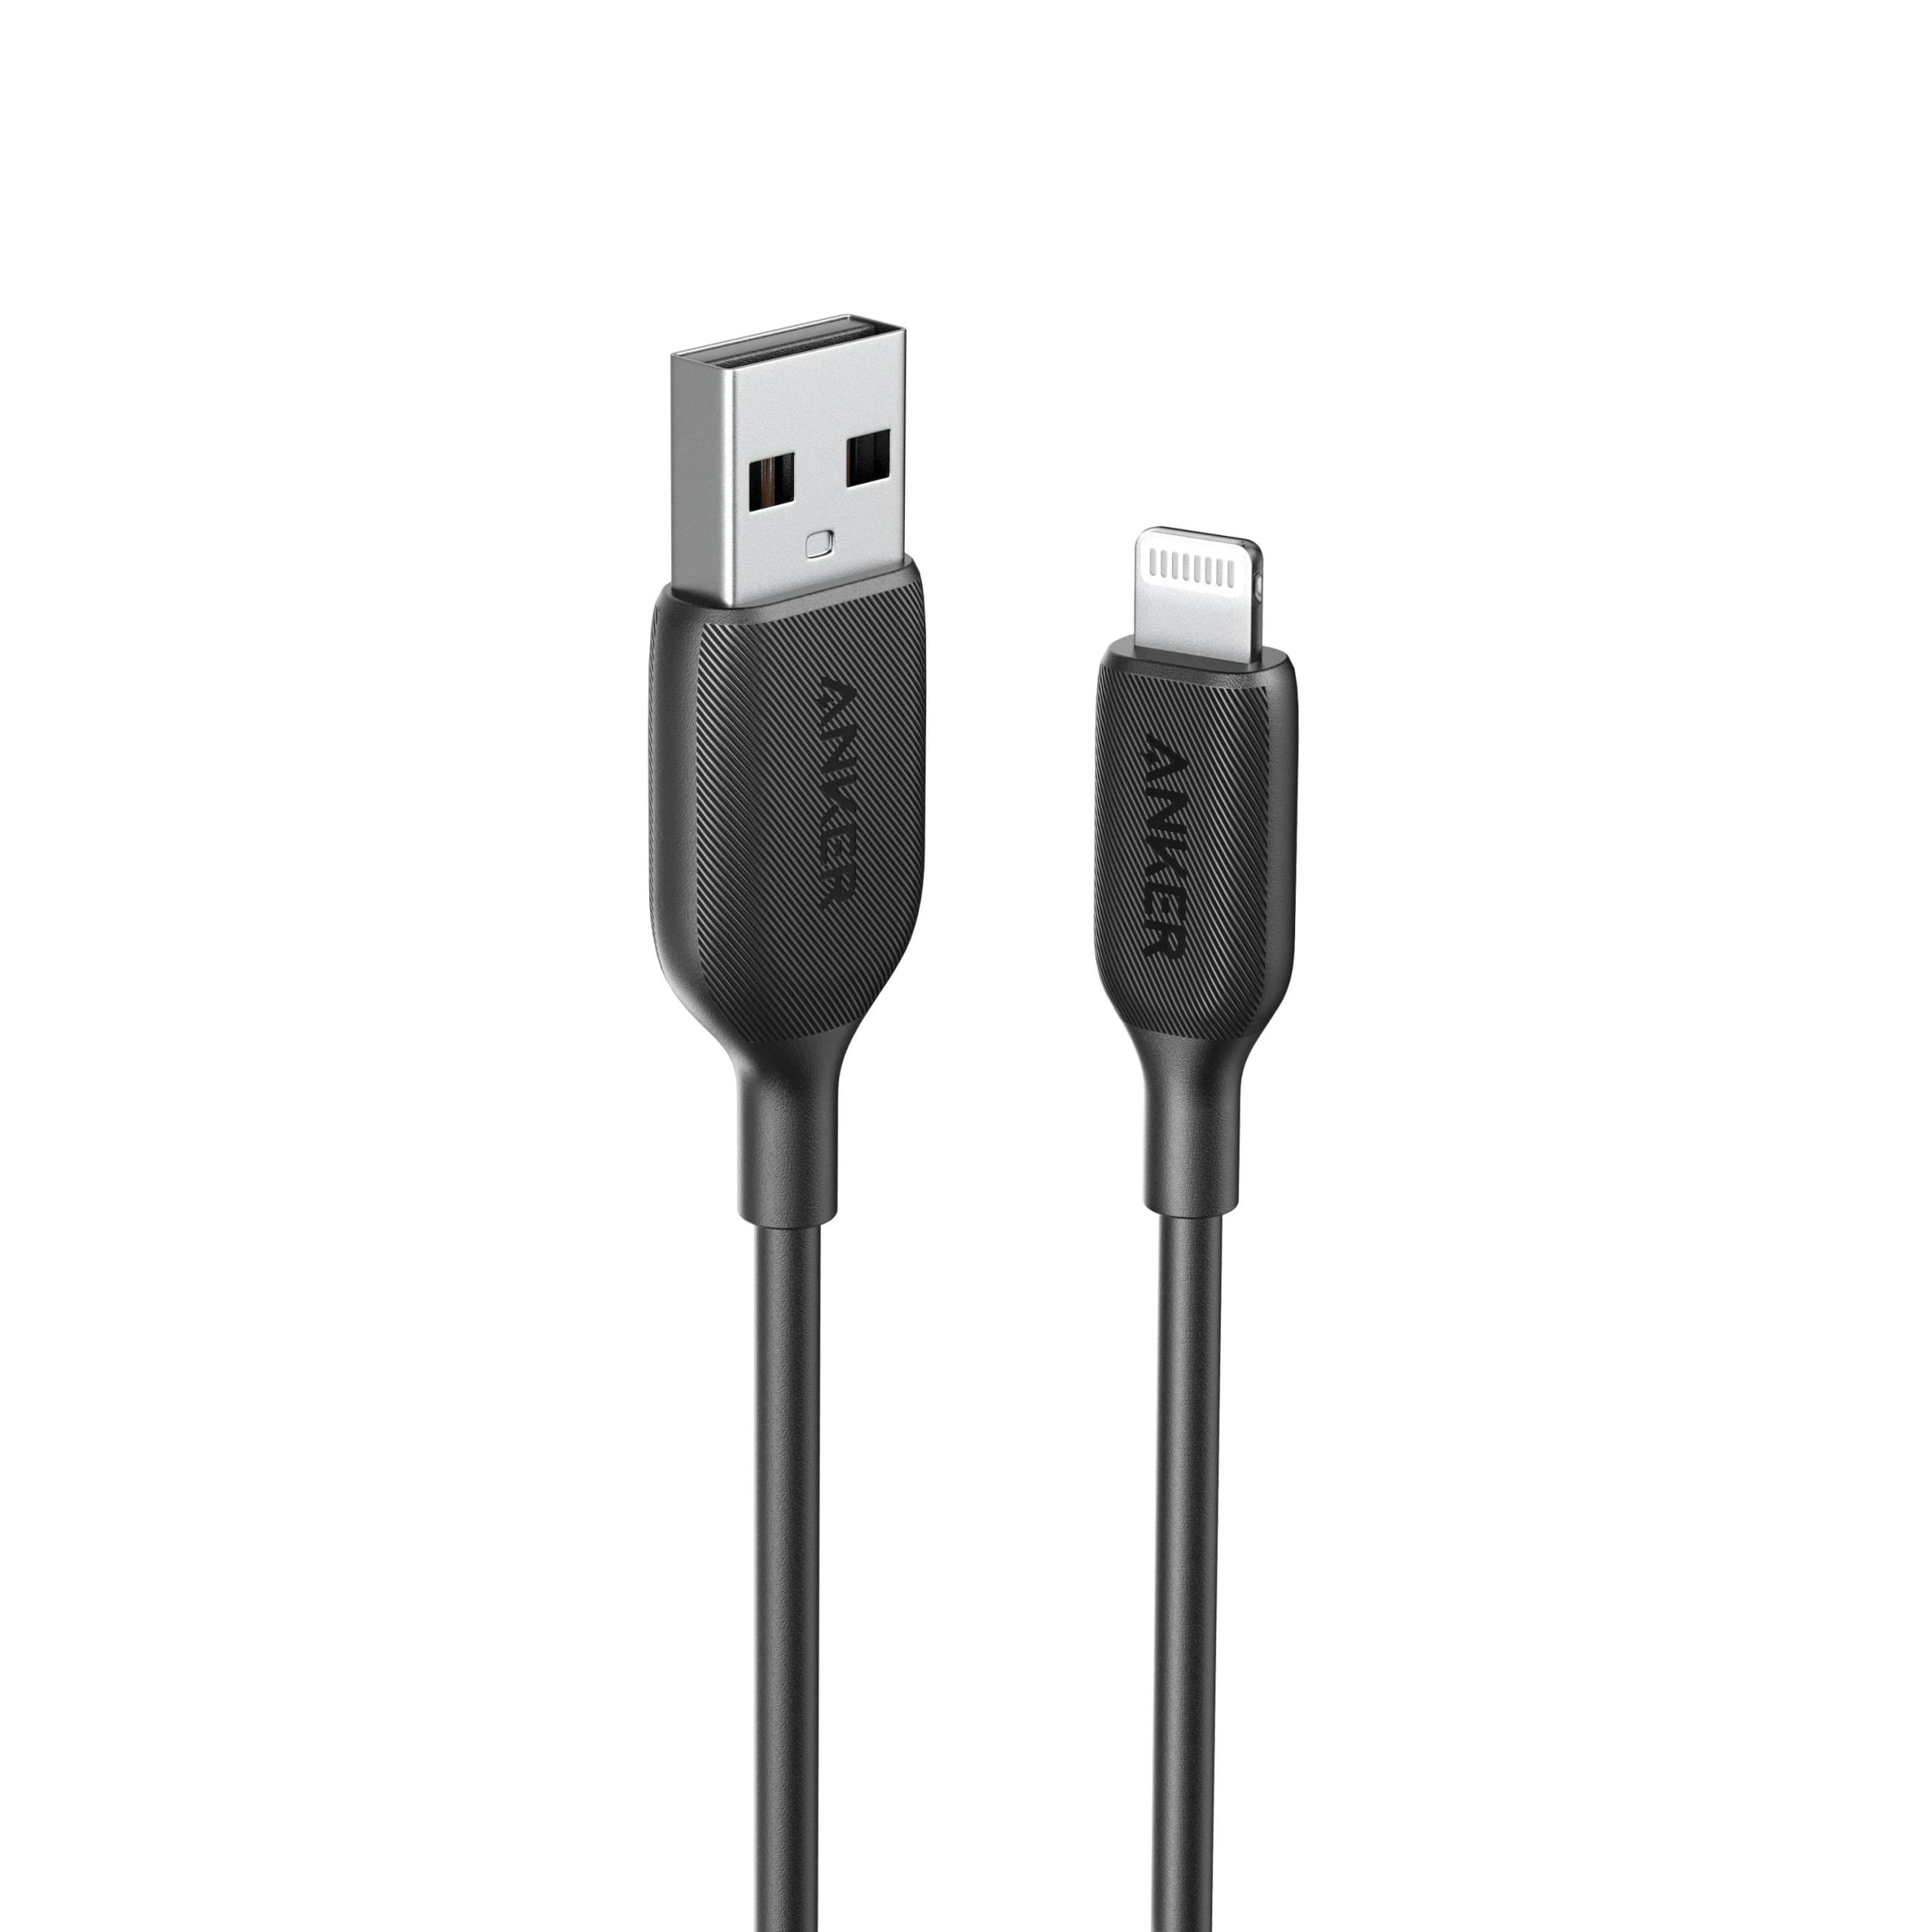 کابل USB به لایتنینگ انکر مدل A8812 به طول 90 سانتیمتر